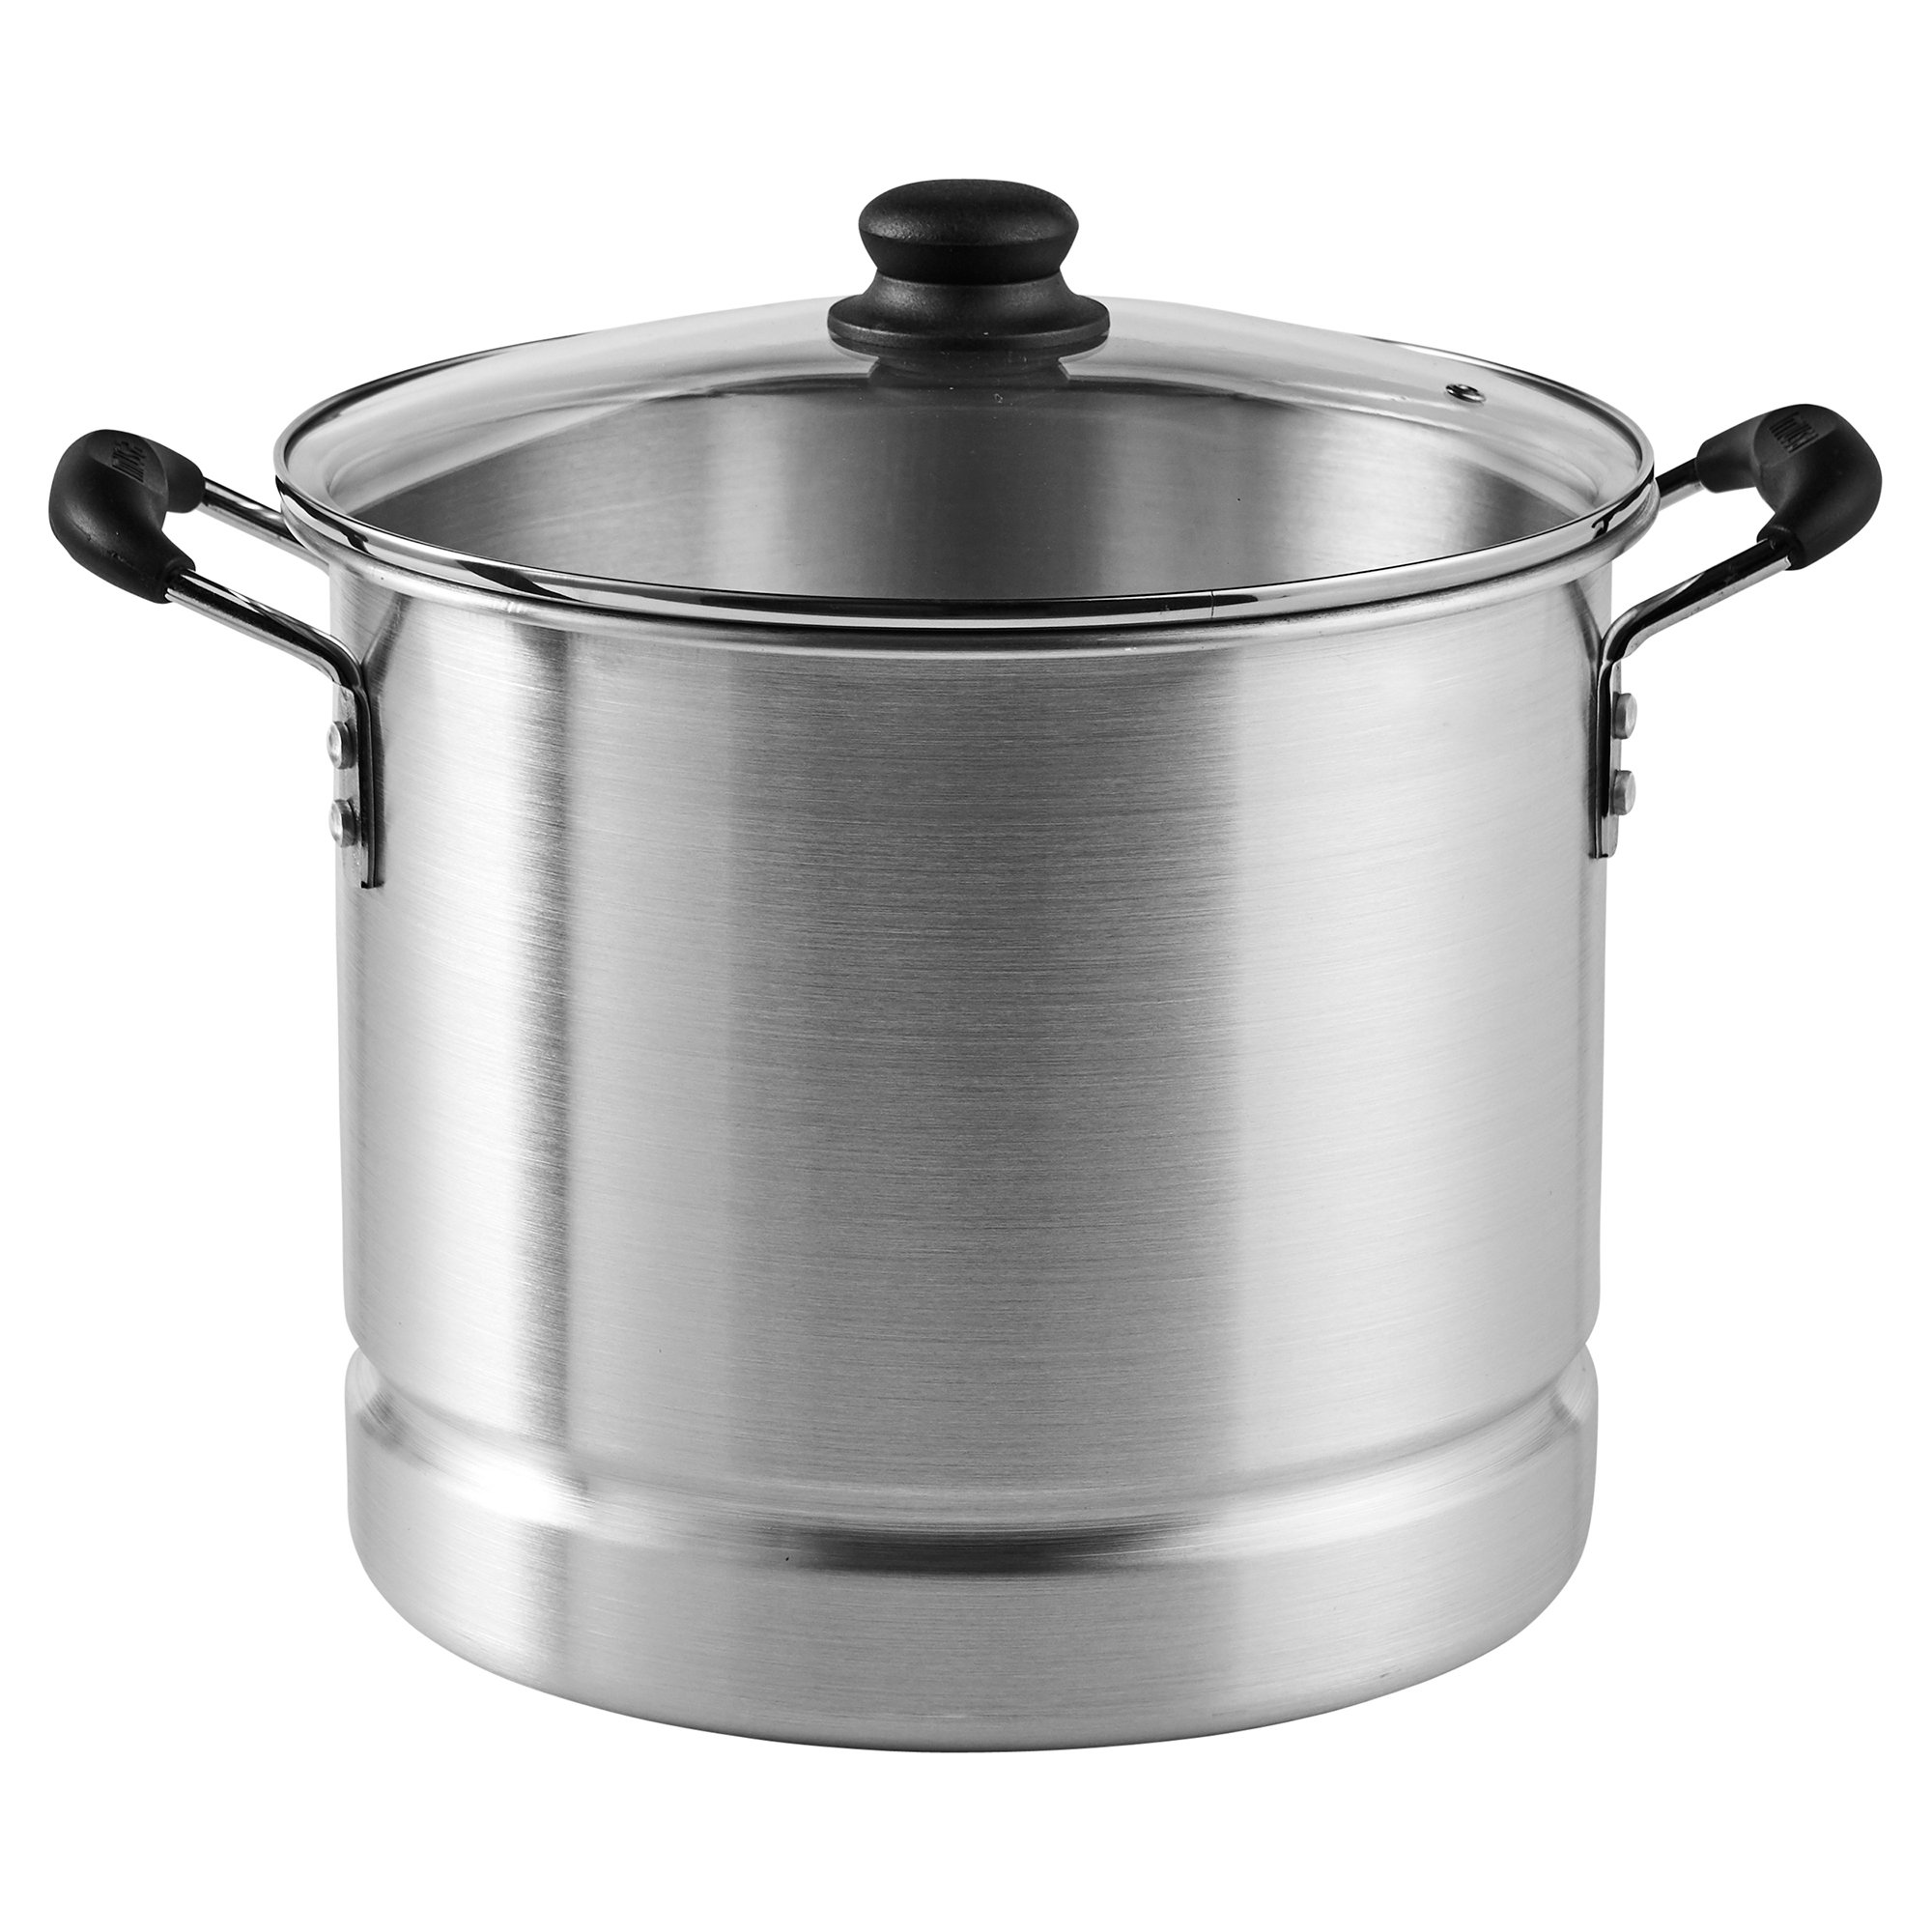 Full Steamer Pot